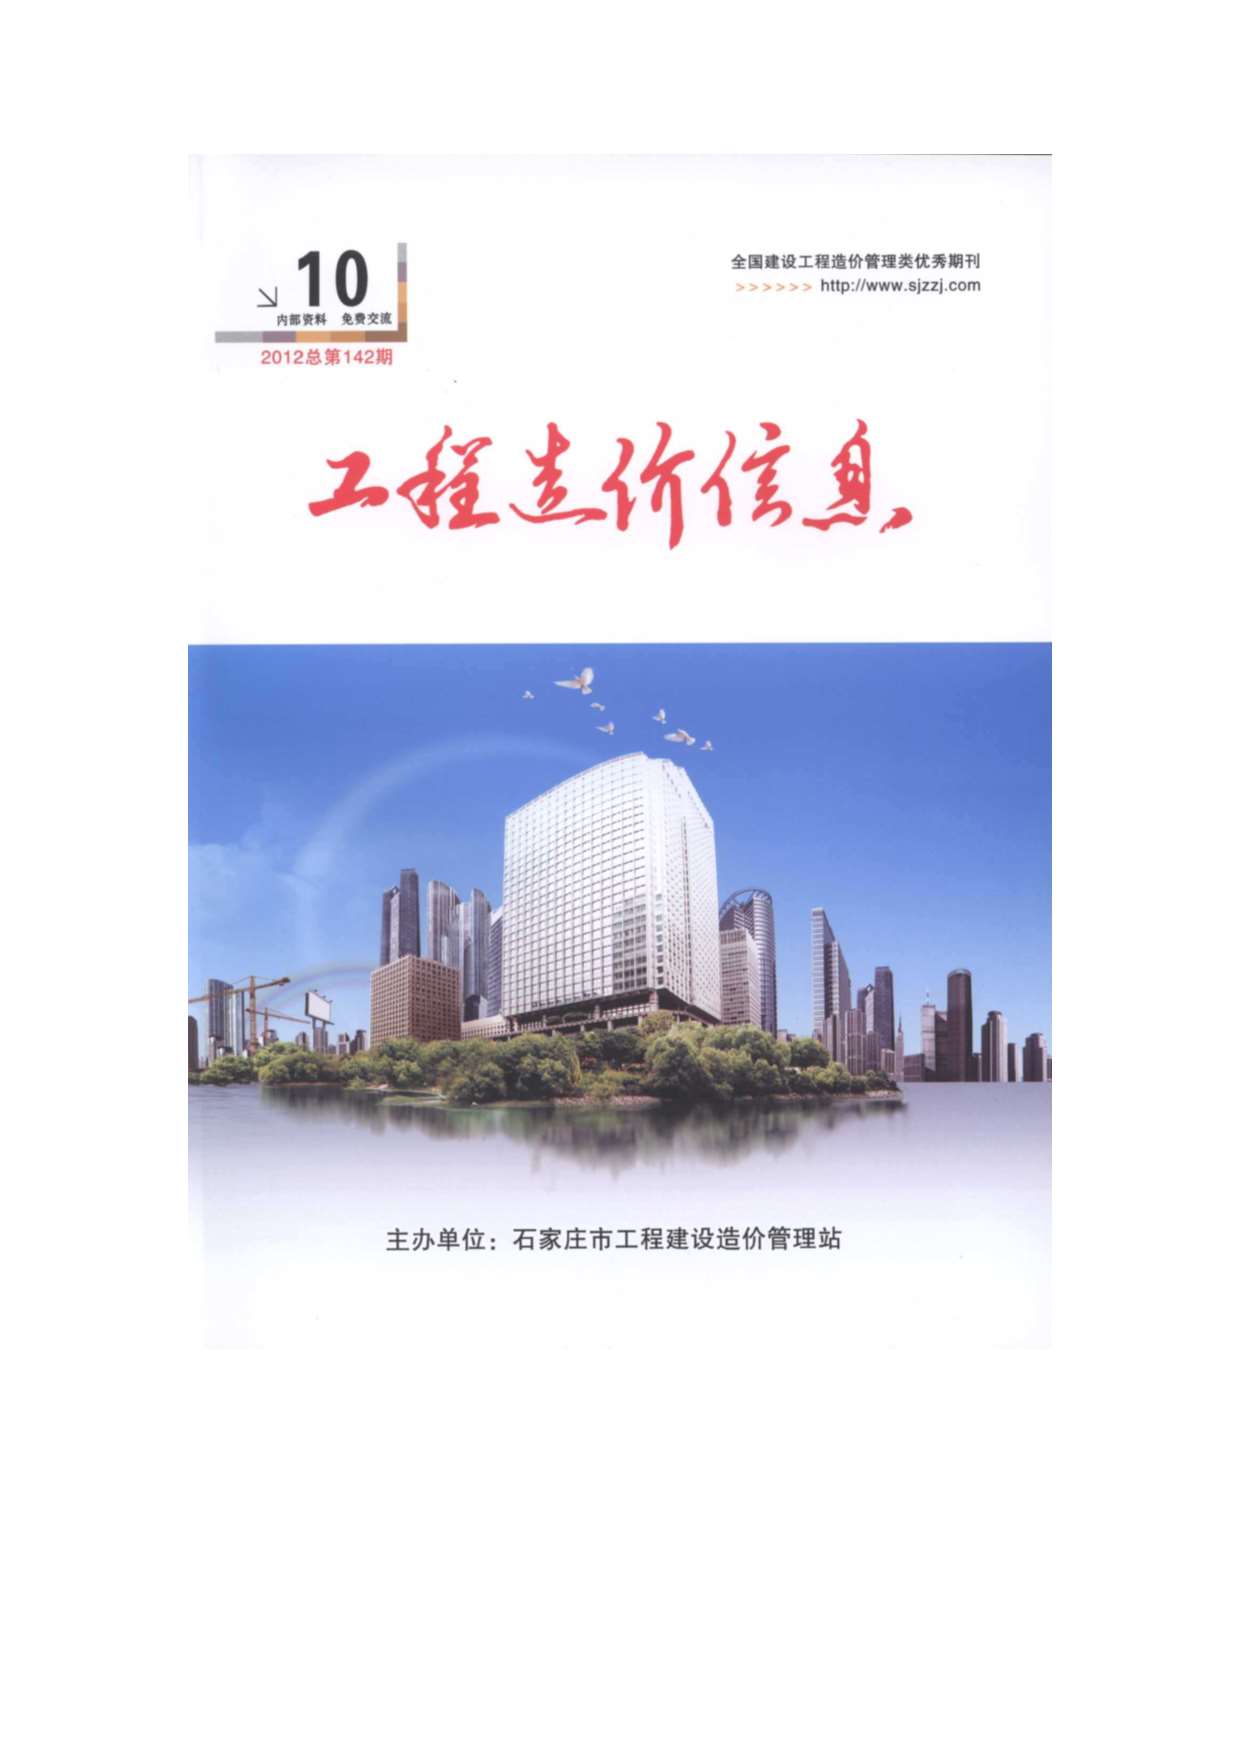 石家庄市2012年10月工程信息价_石家庄市信息价期刊PDF扫描件电子版